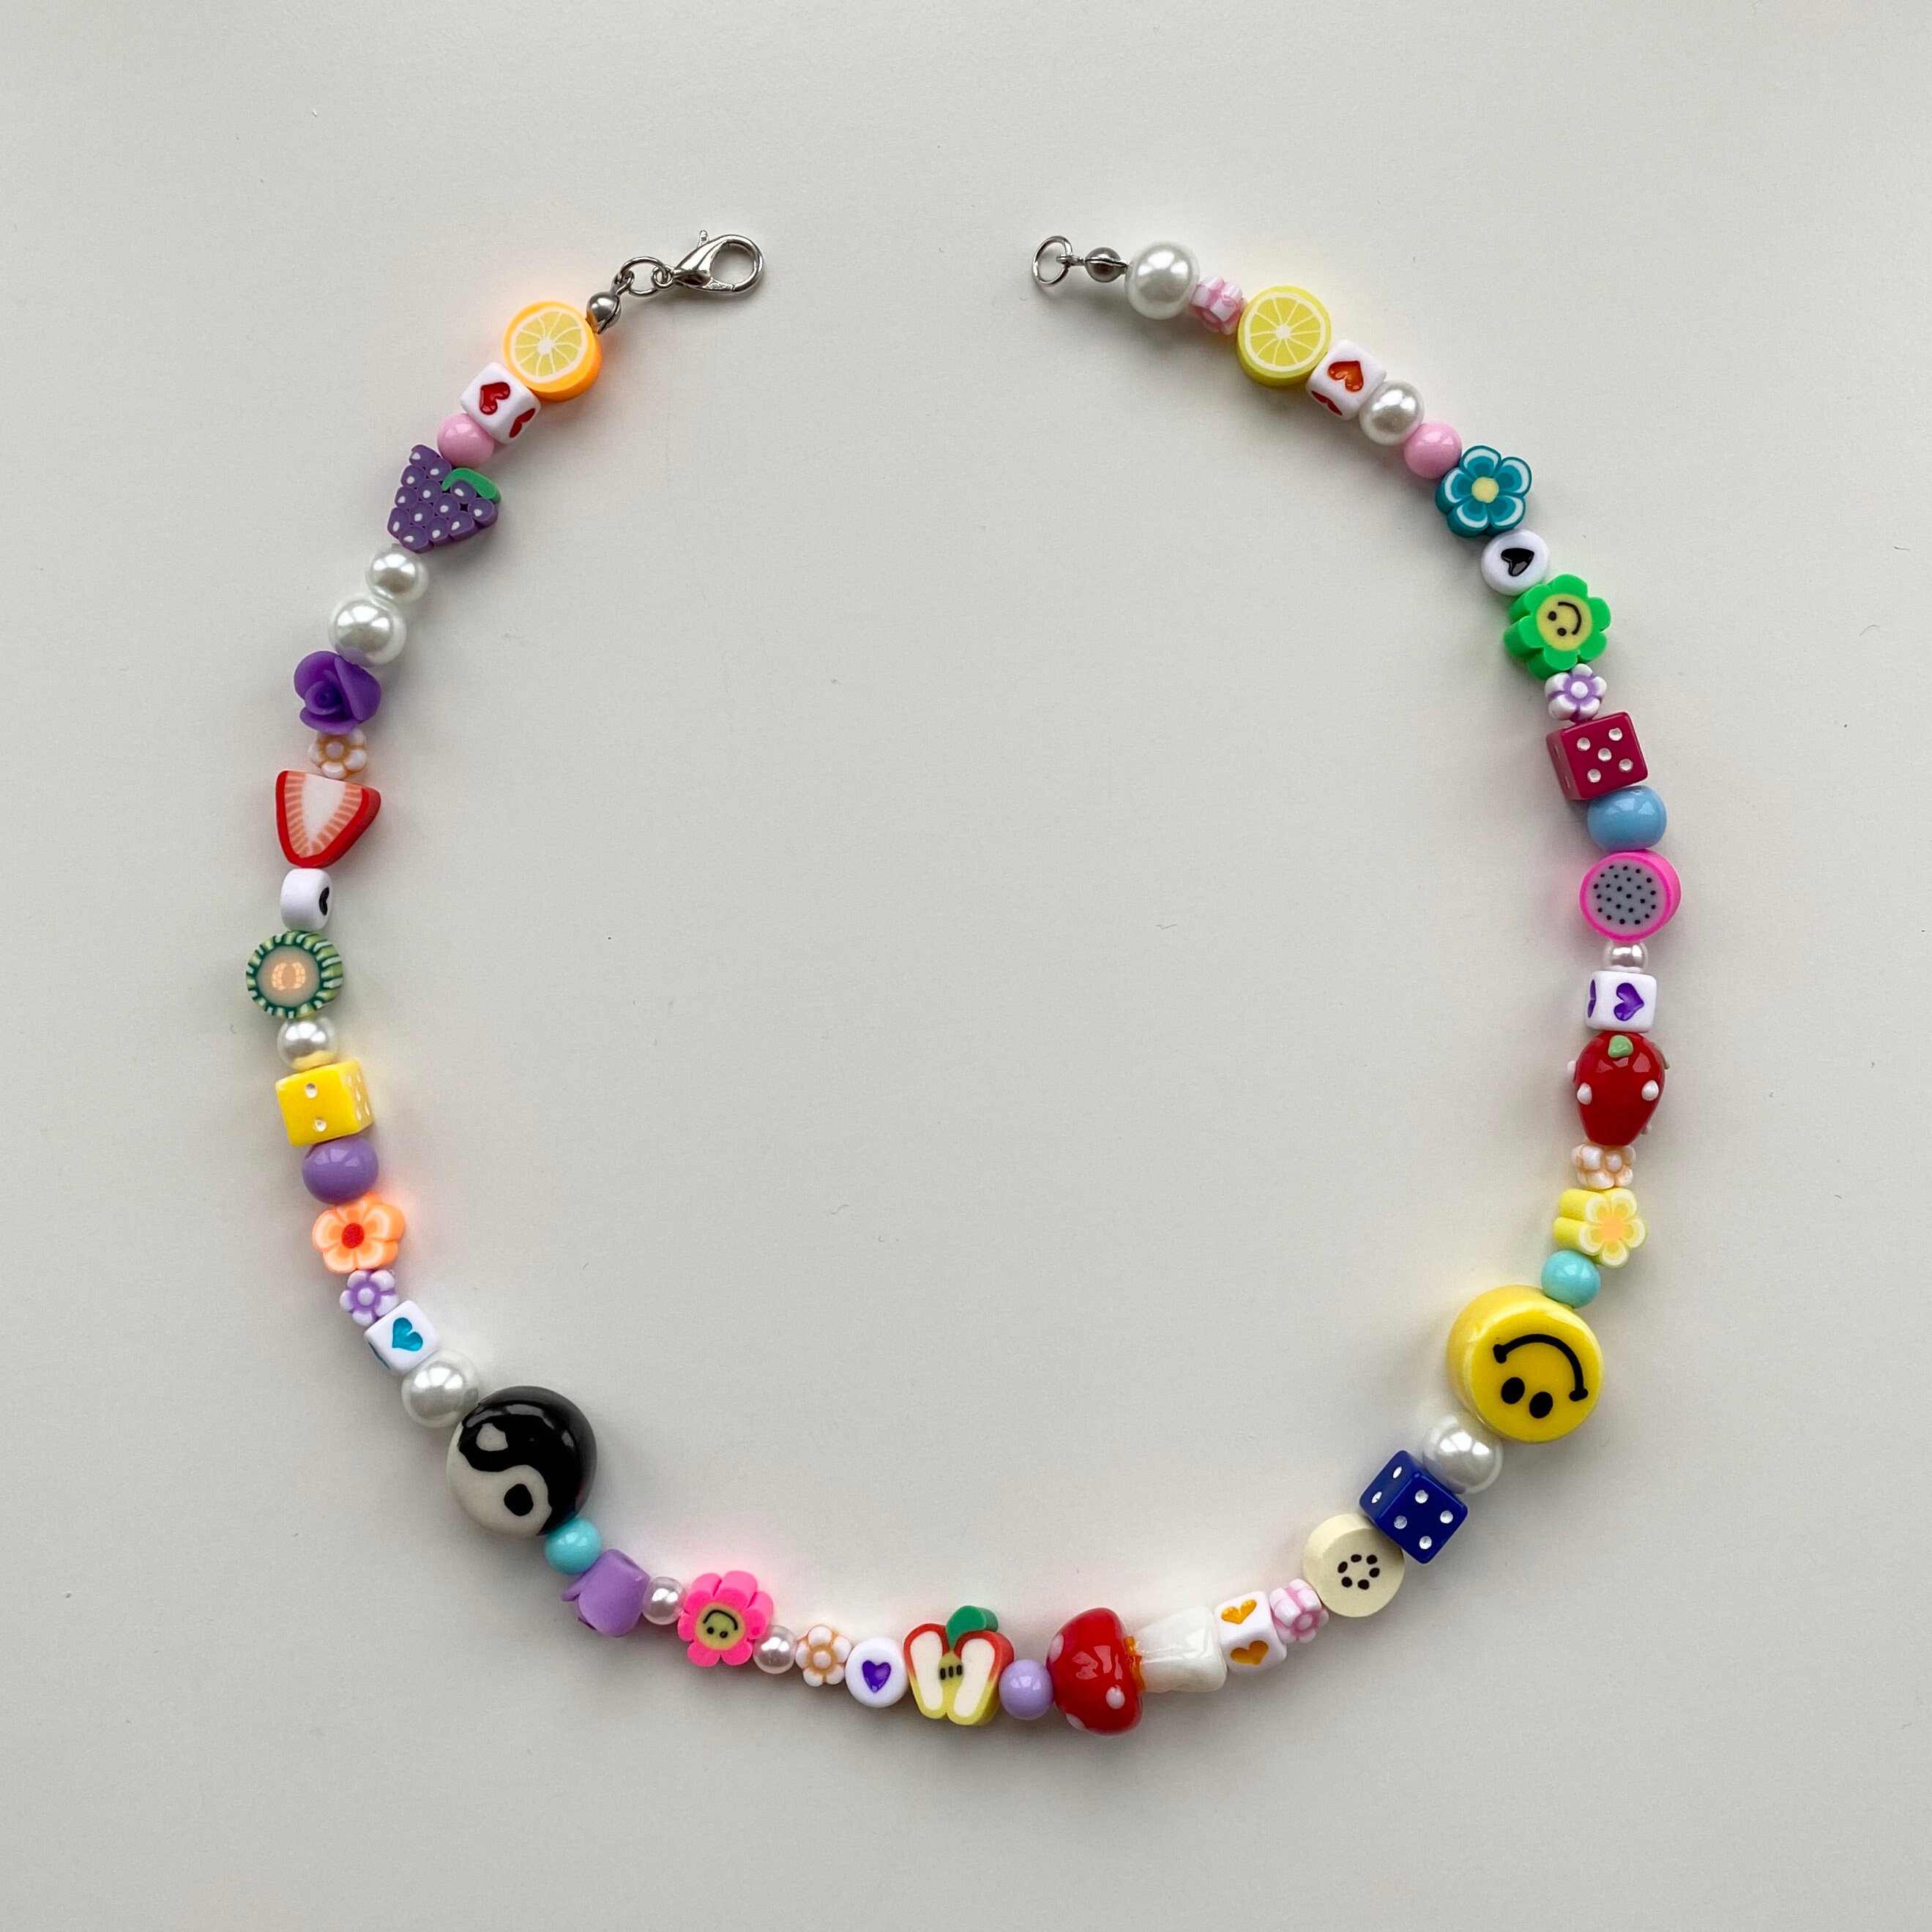 Smiley Face & Yin Yang Mismatched Beaded Necklace | Etsy UK